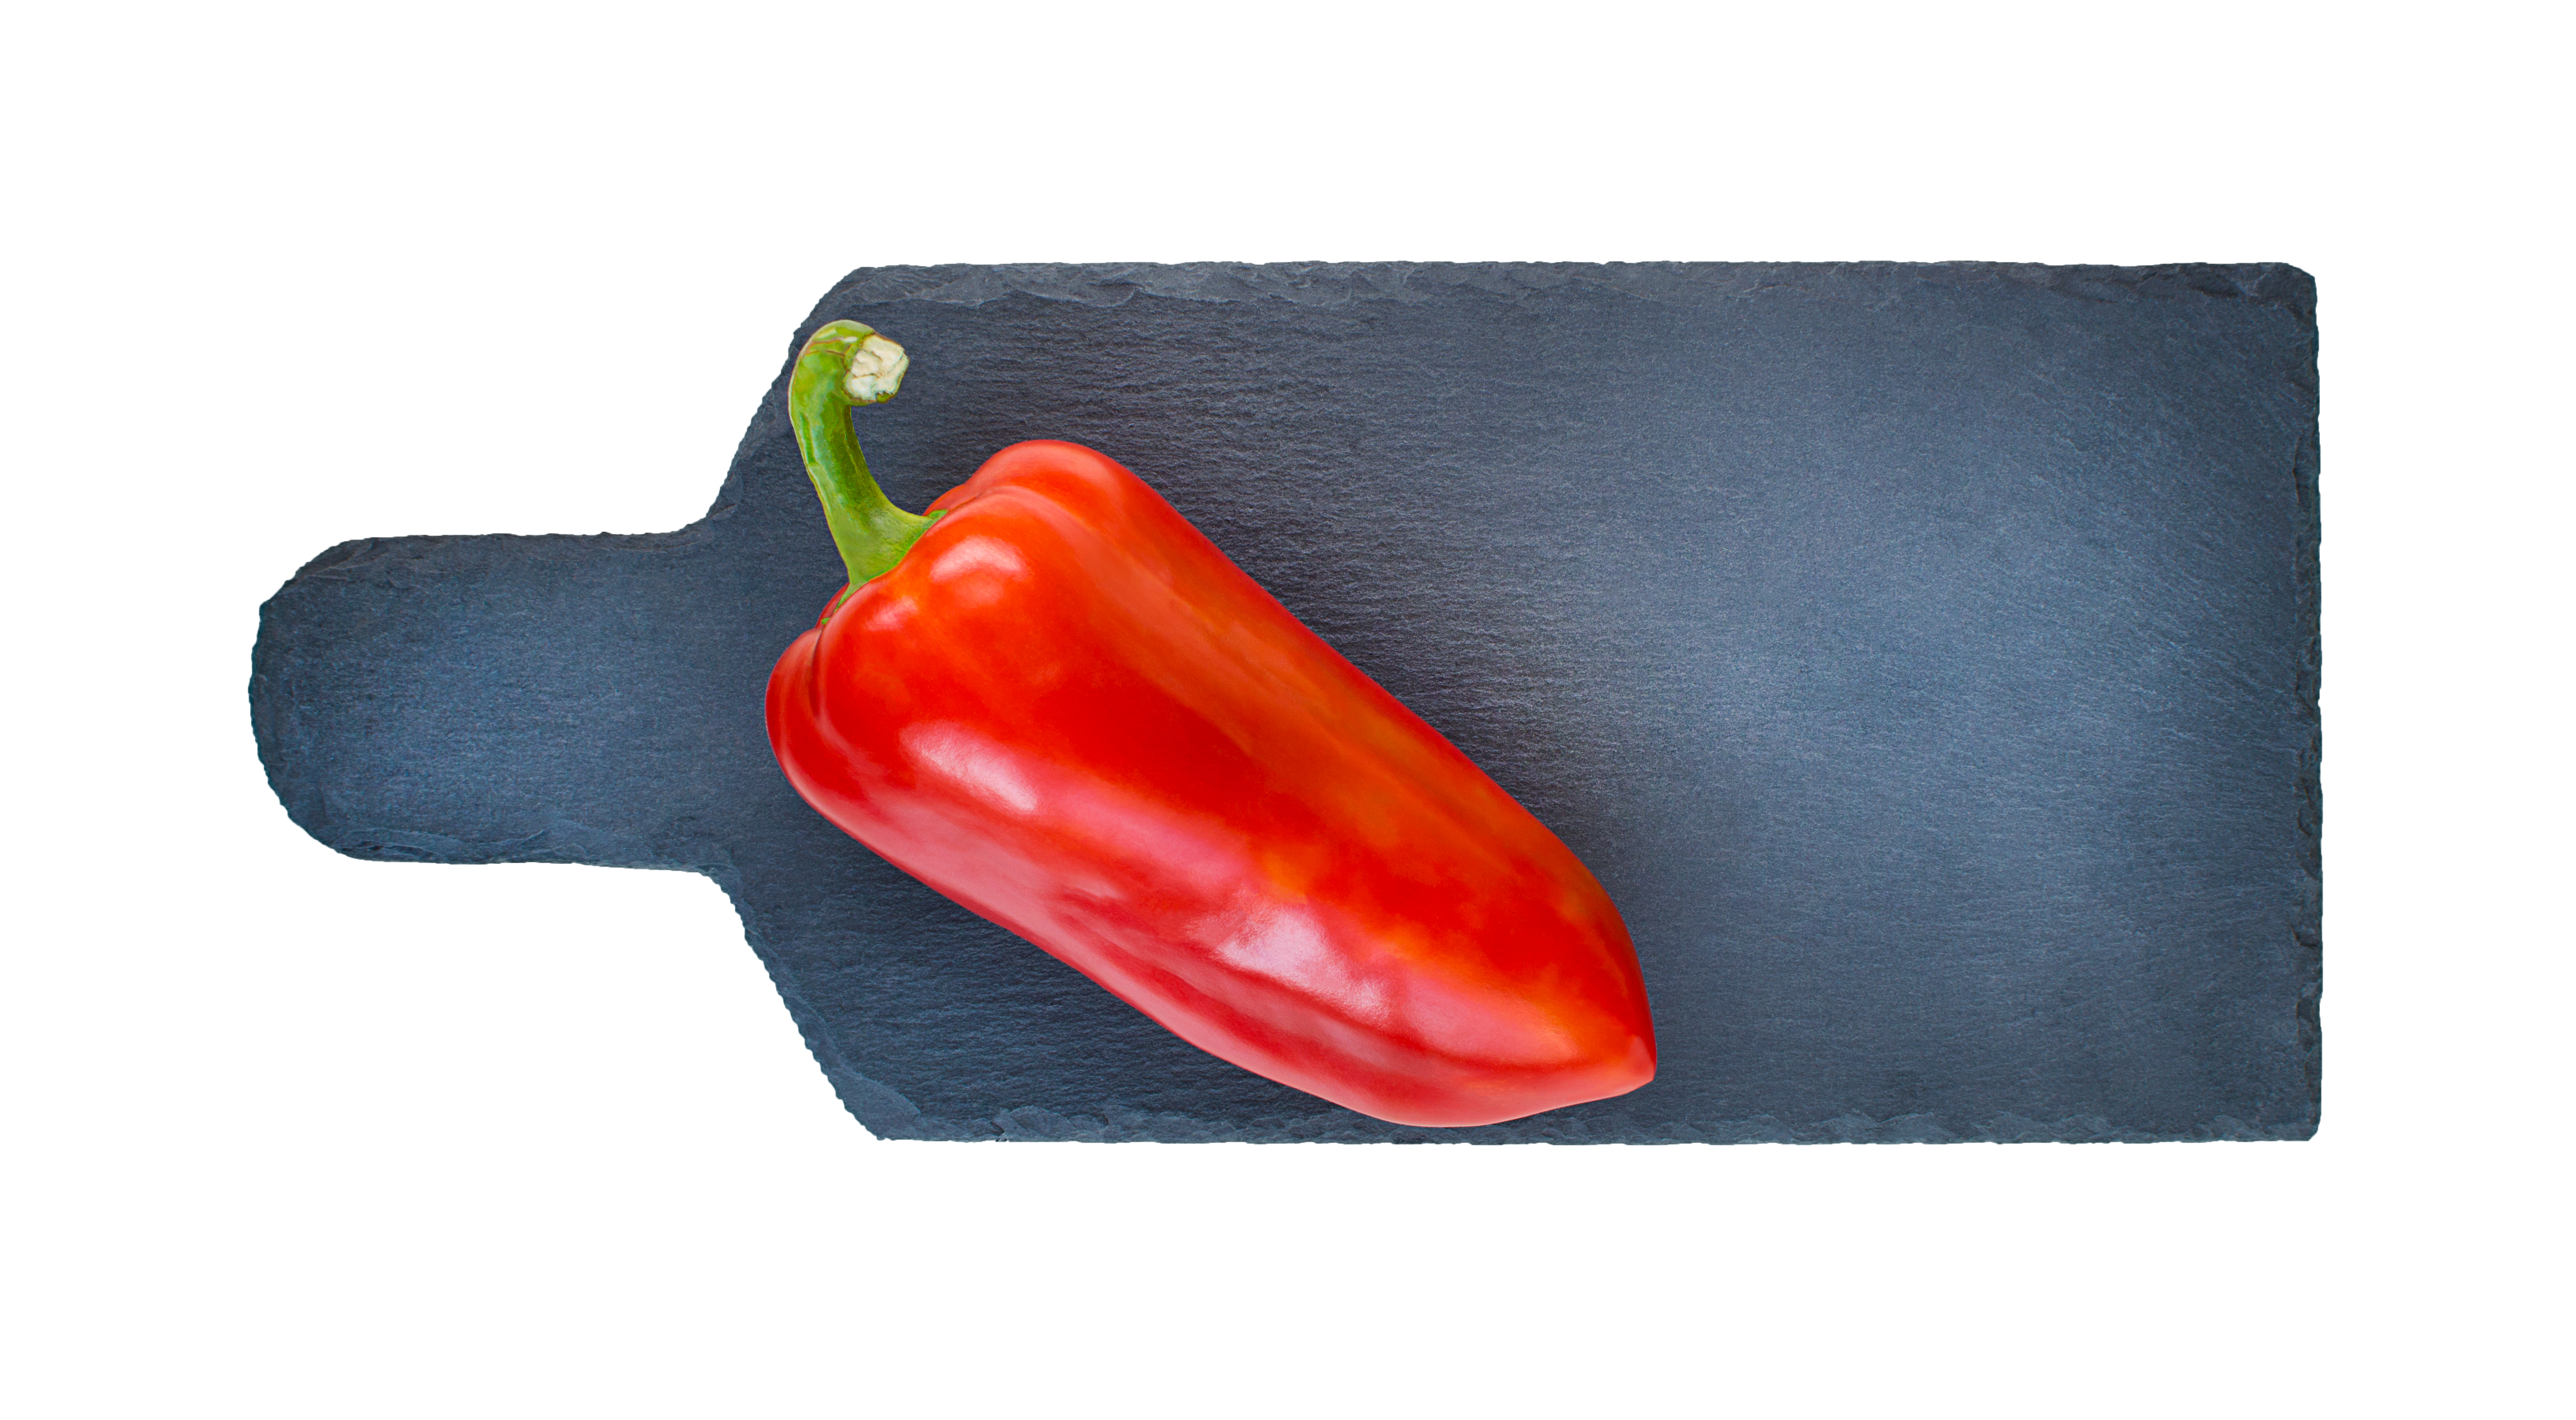 A red corno di toro pepper on a slate cutting board